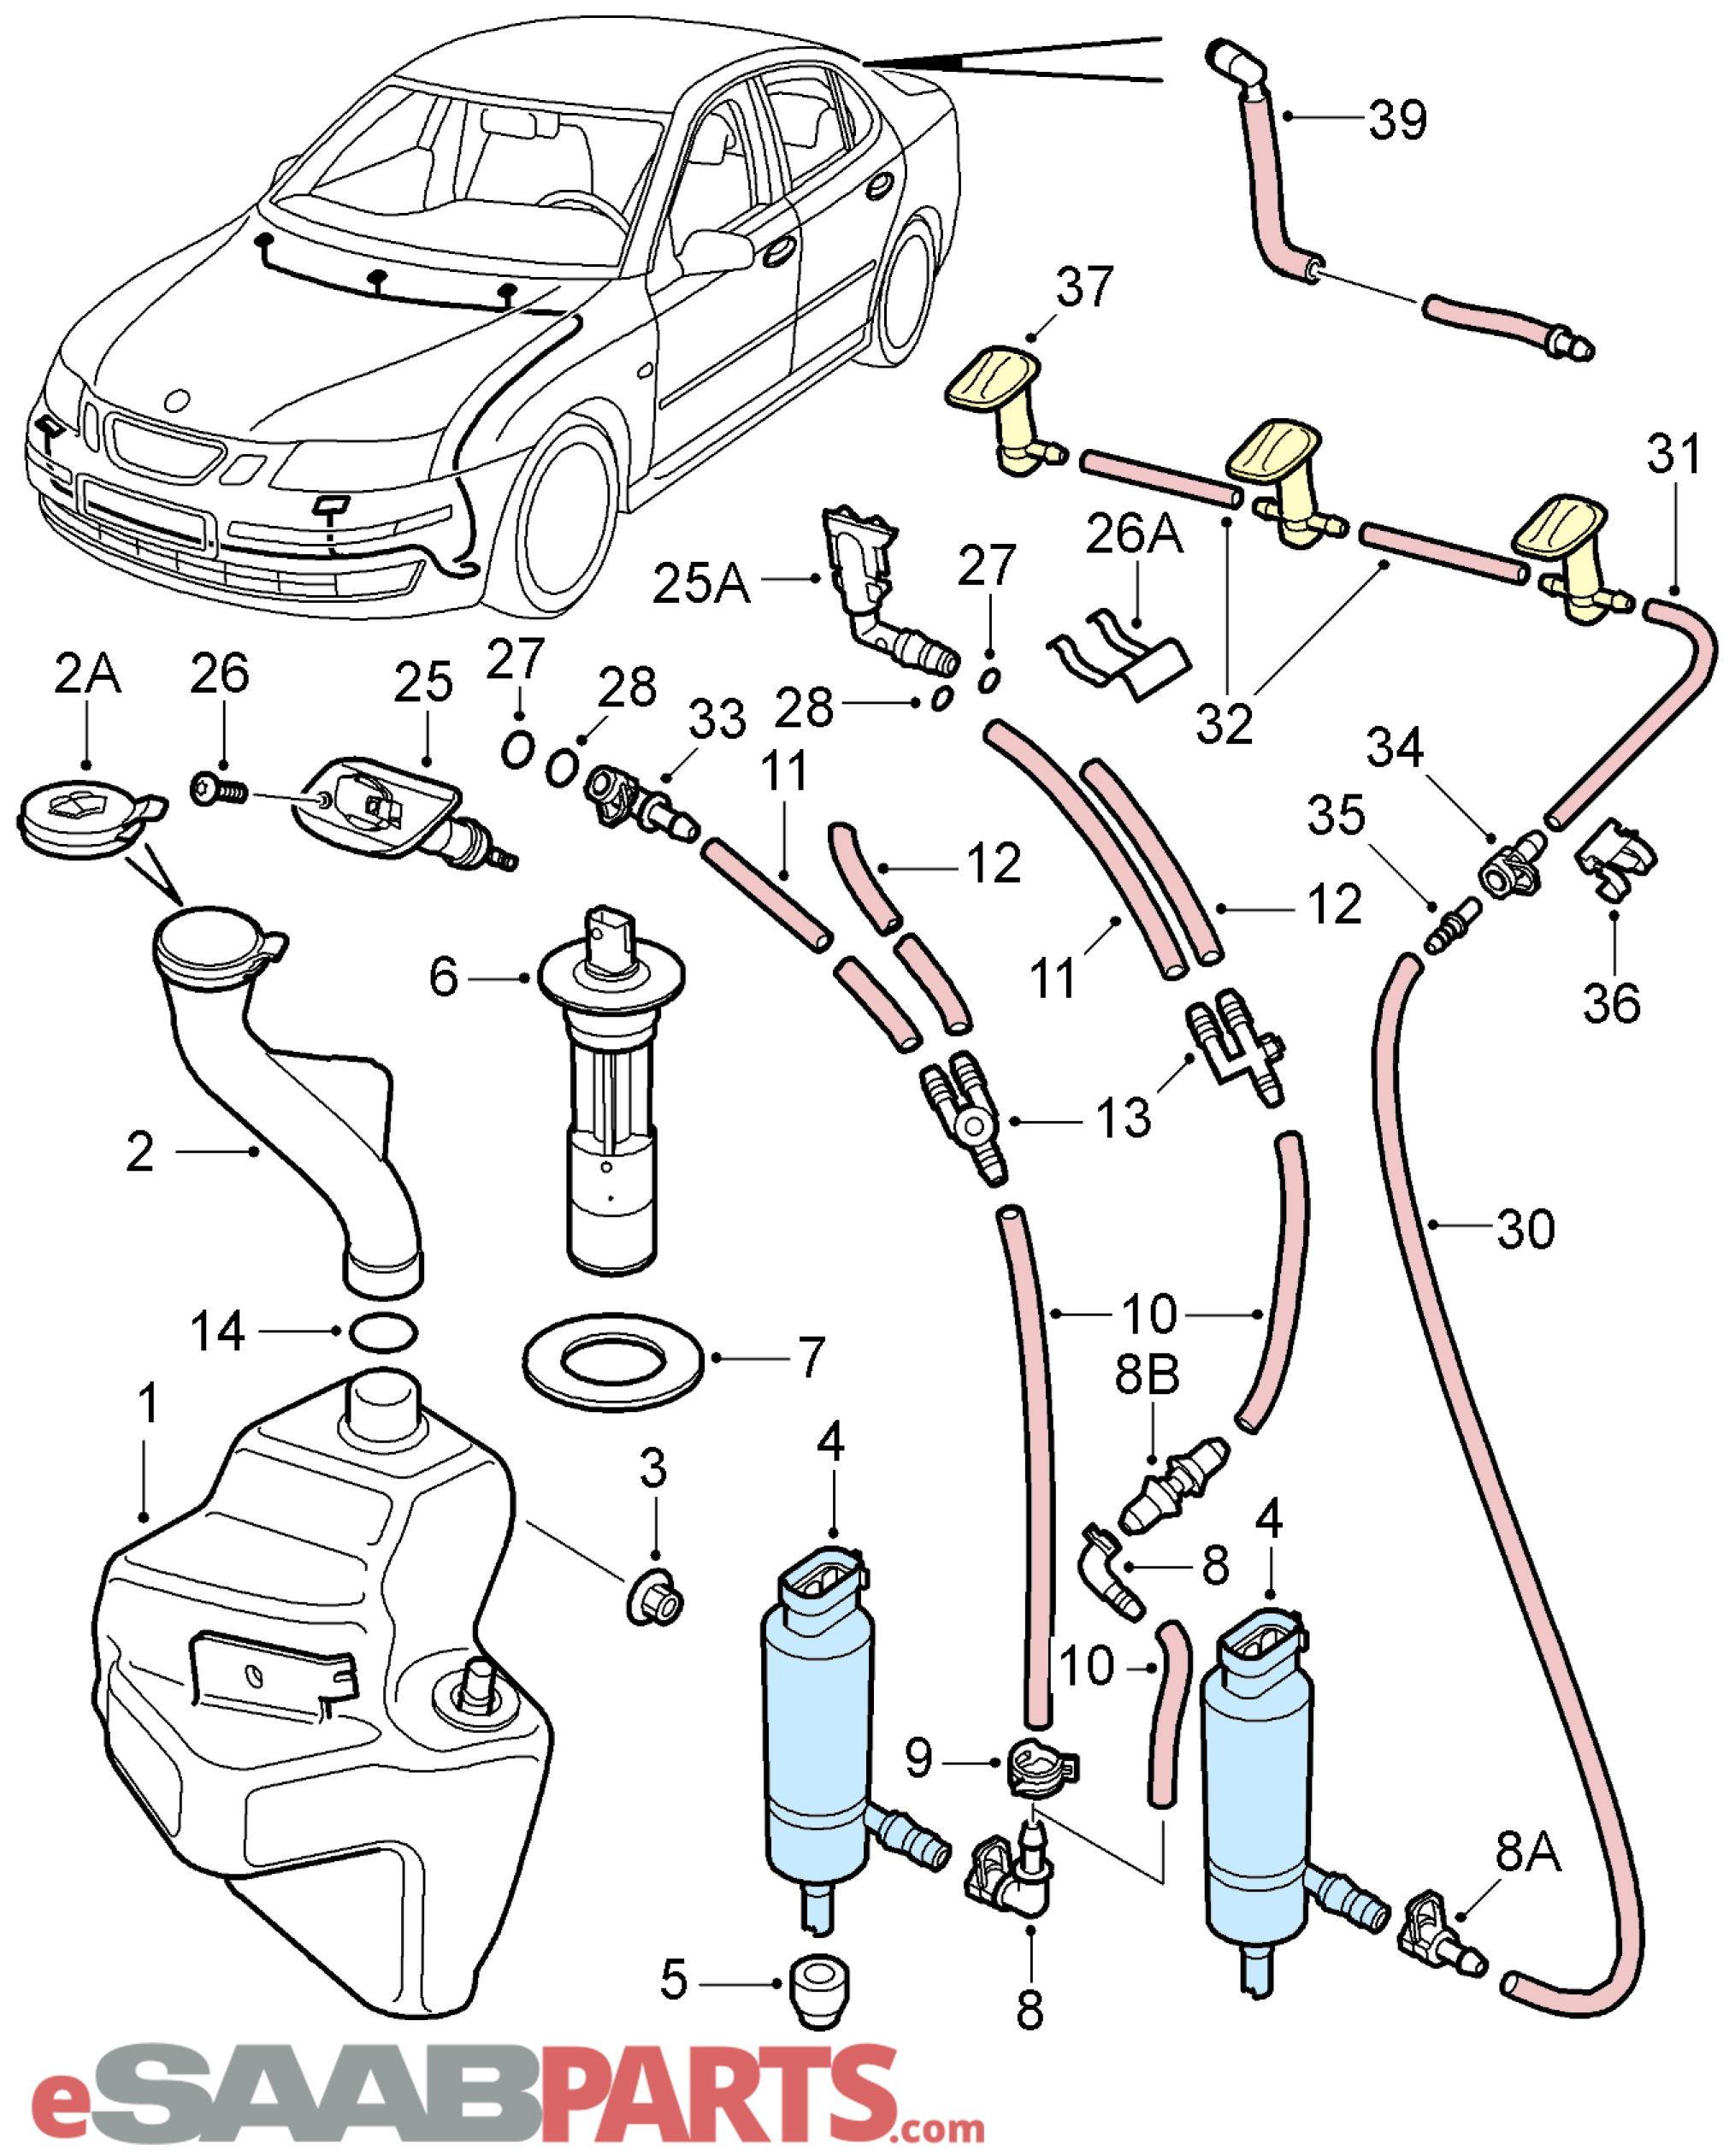 Saab 9 3 Parts Diagram